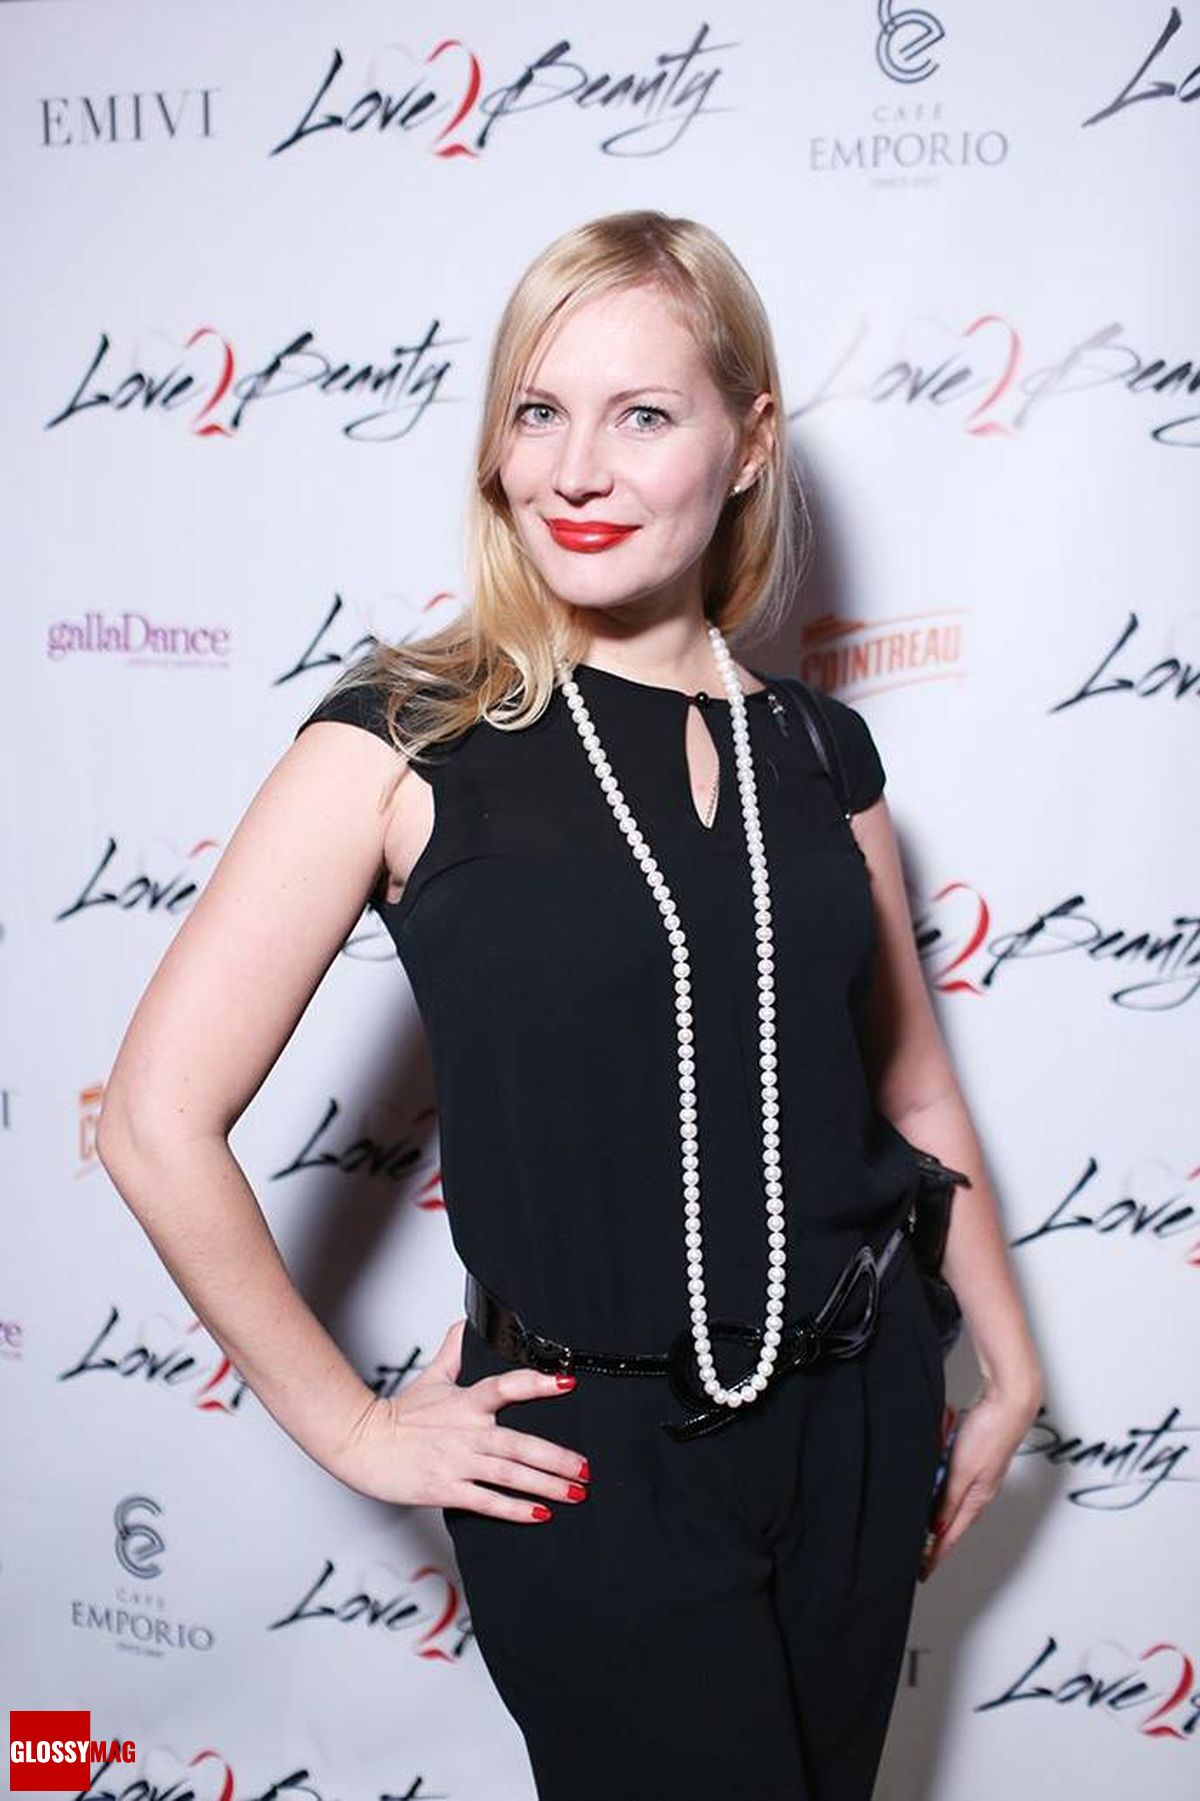 Екатерина Пузенко (GallaDance) на праздновании 2-летия Love2Beauty.ru в EMPORIO CAFE, 20 ноября 2014 г.